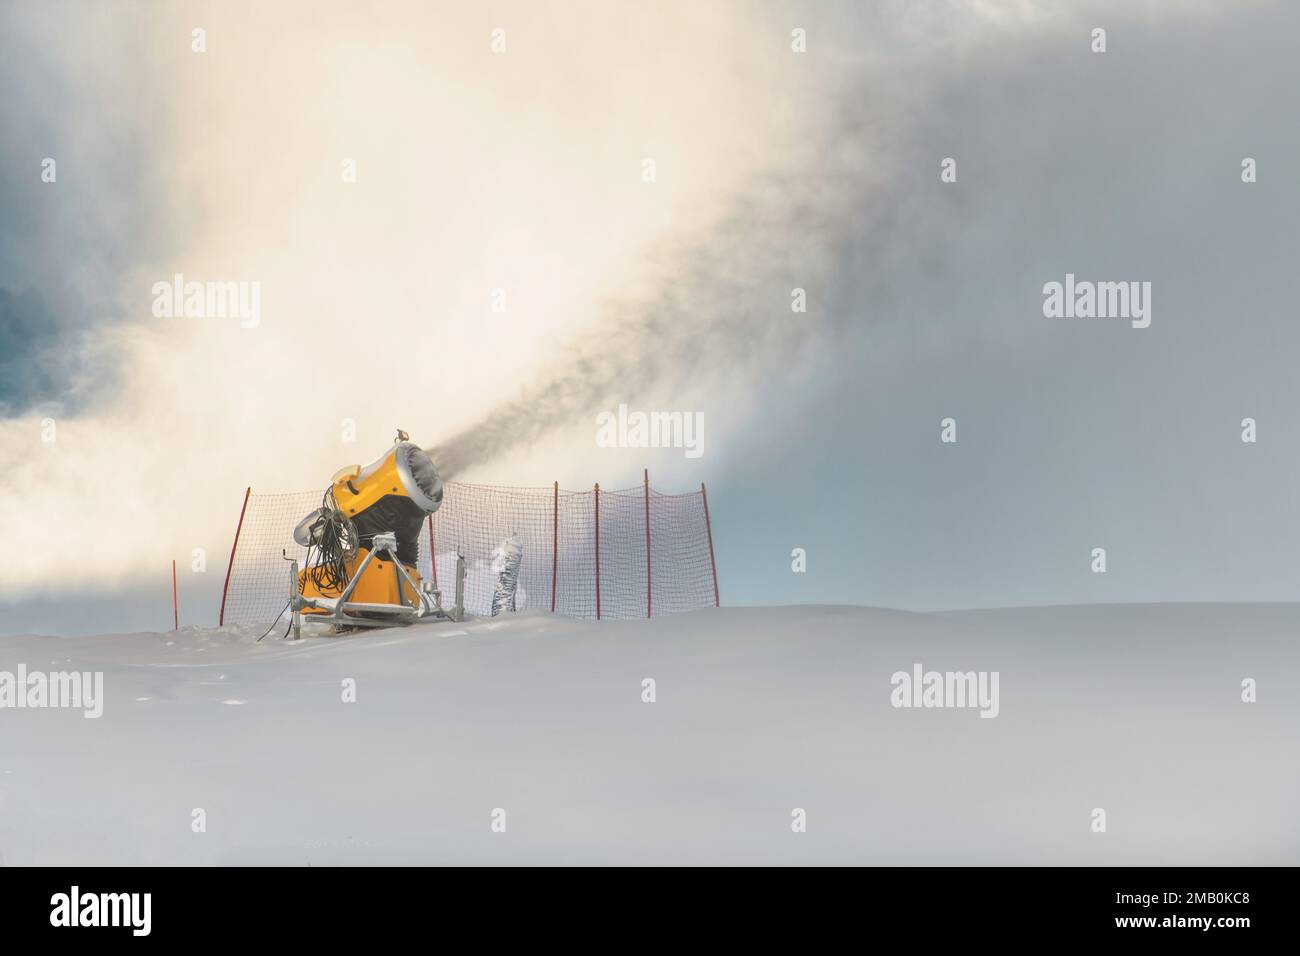 Un canon à neige en action dans une station de ski Banque D'Images